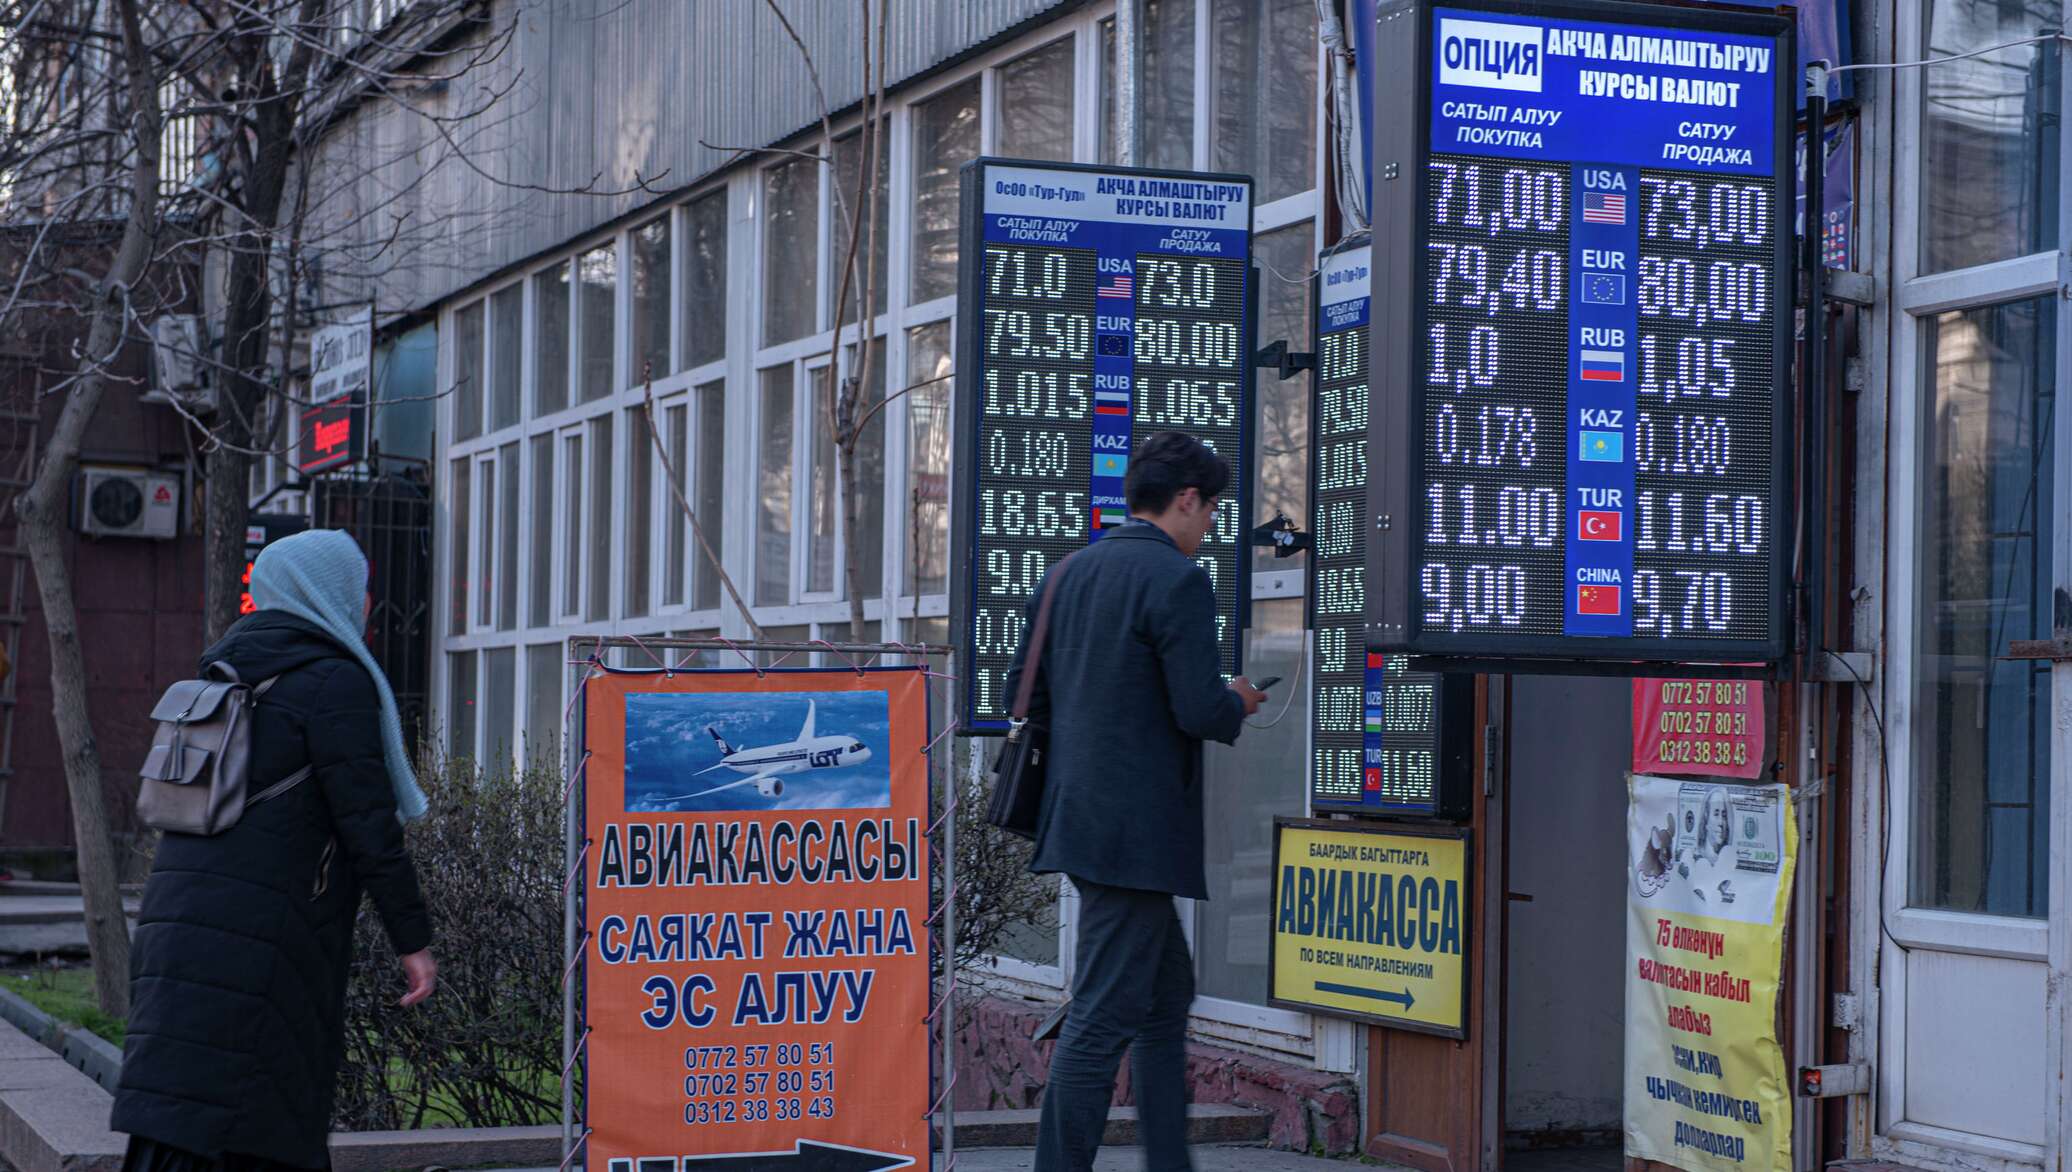 Рубль на сом бишкек сегодня в кыргызстане. Обмен валюты. Курс валют. Валюта Кыргызстана. Доллар сом Киргизия.